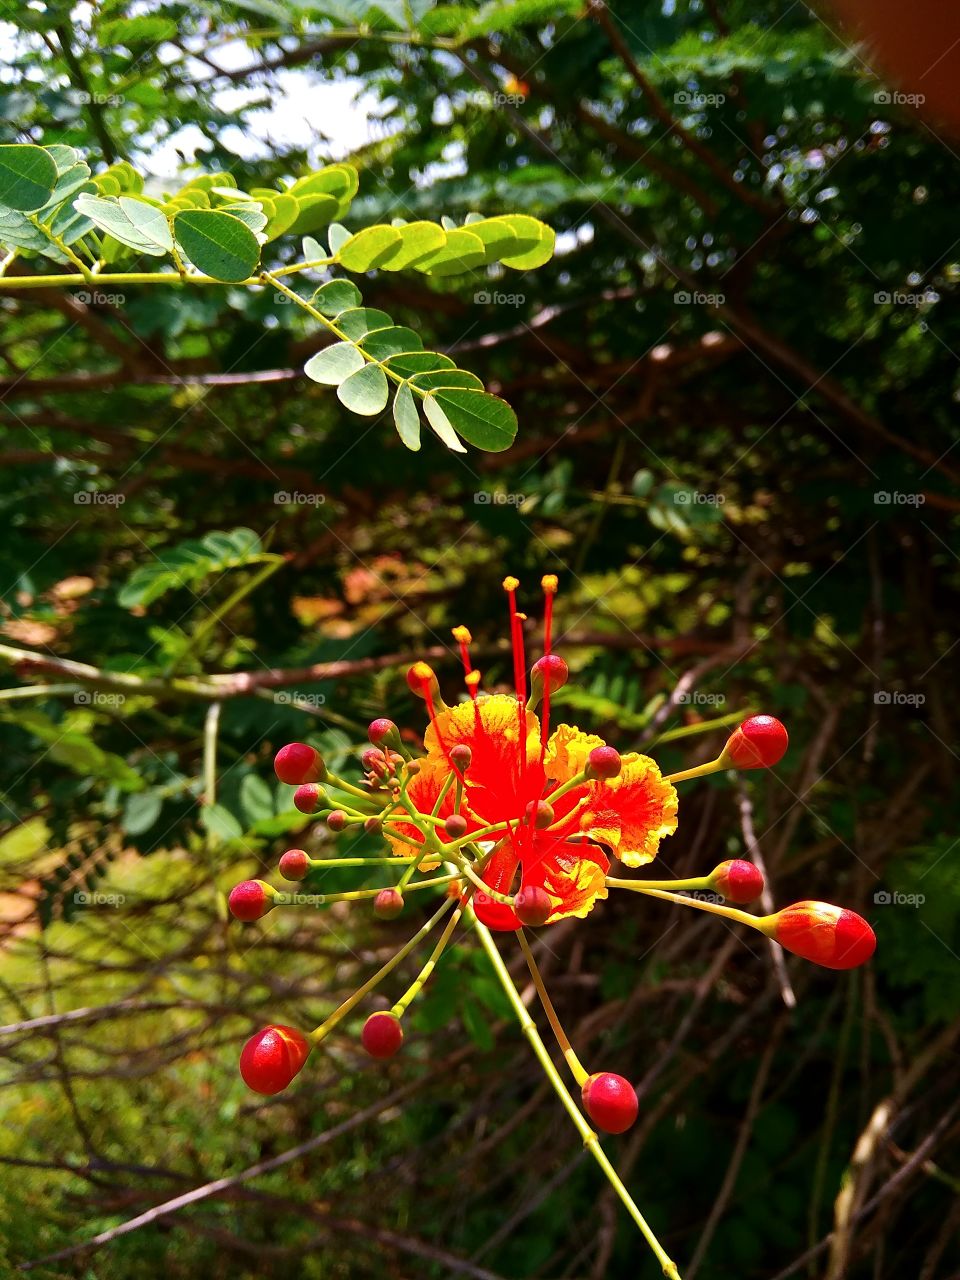 Red Yellowish flower